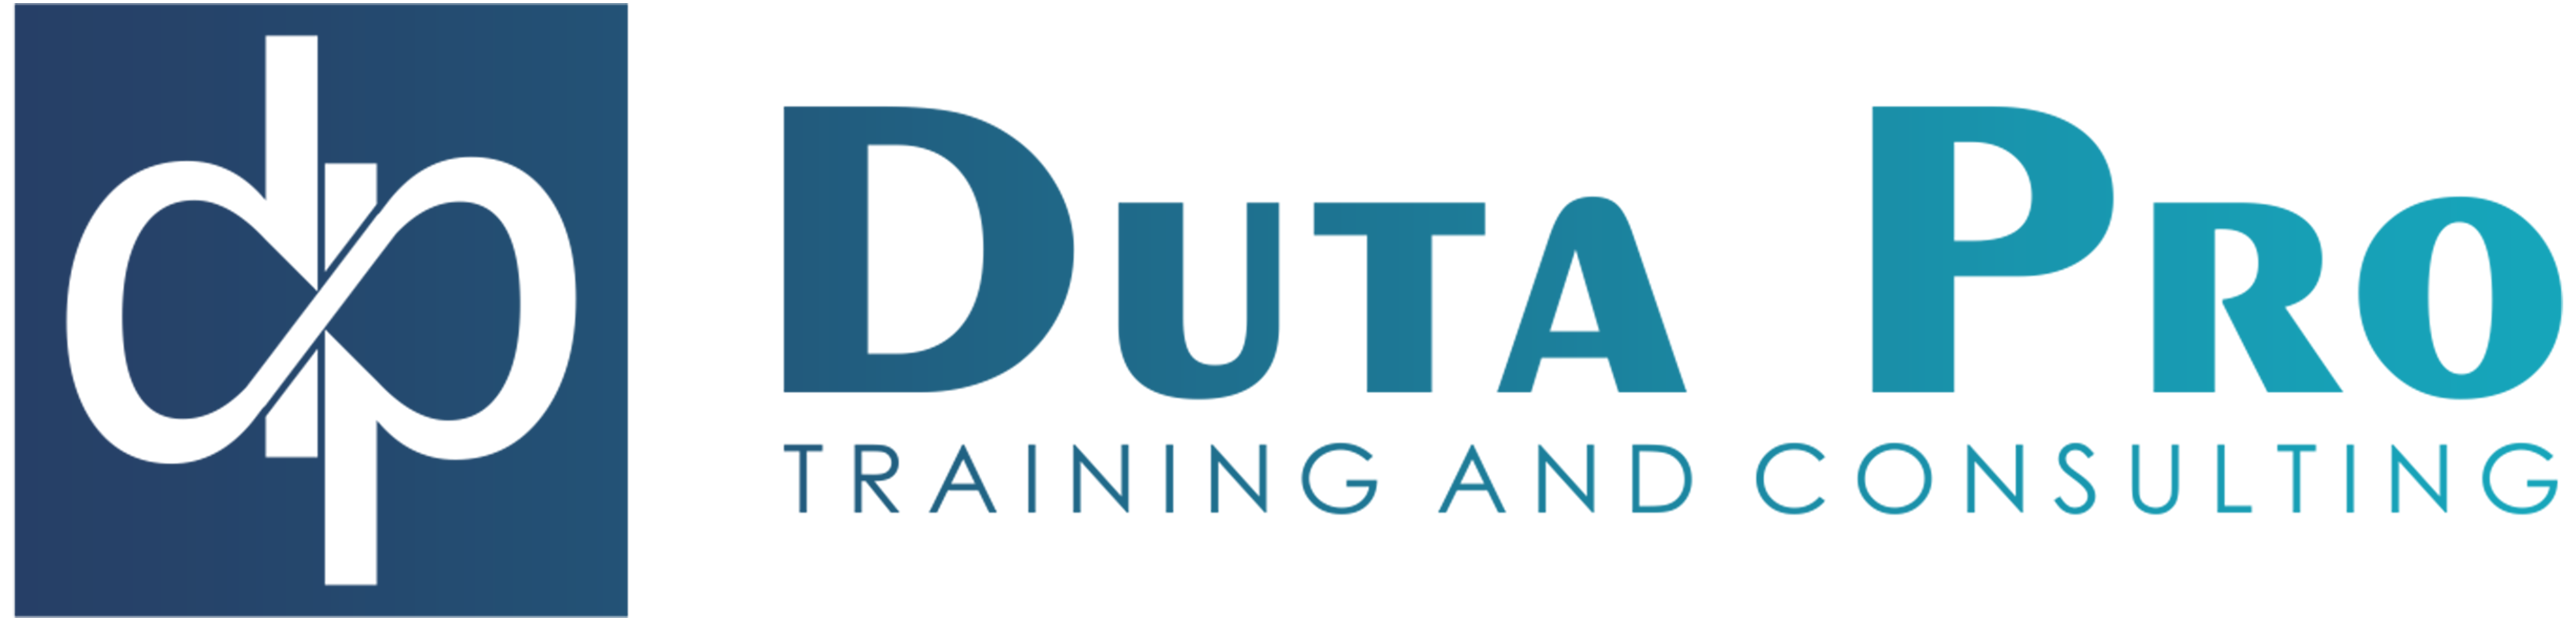 Duta Pro Training Consulting Logo